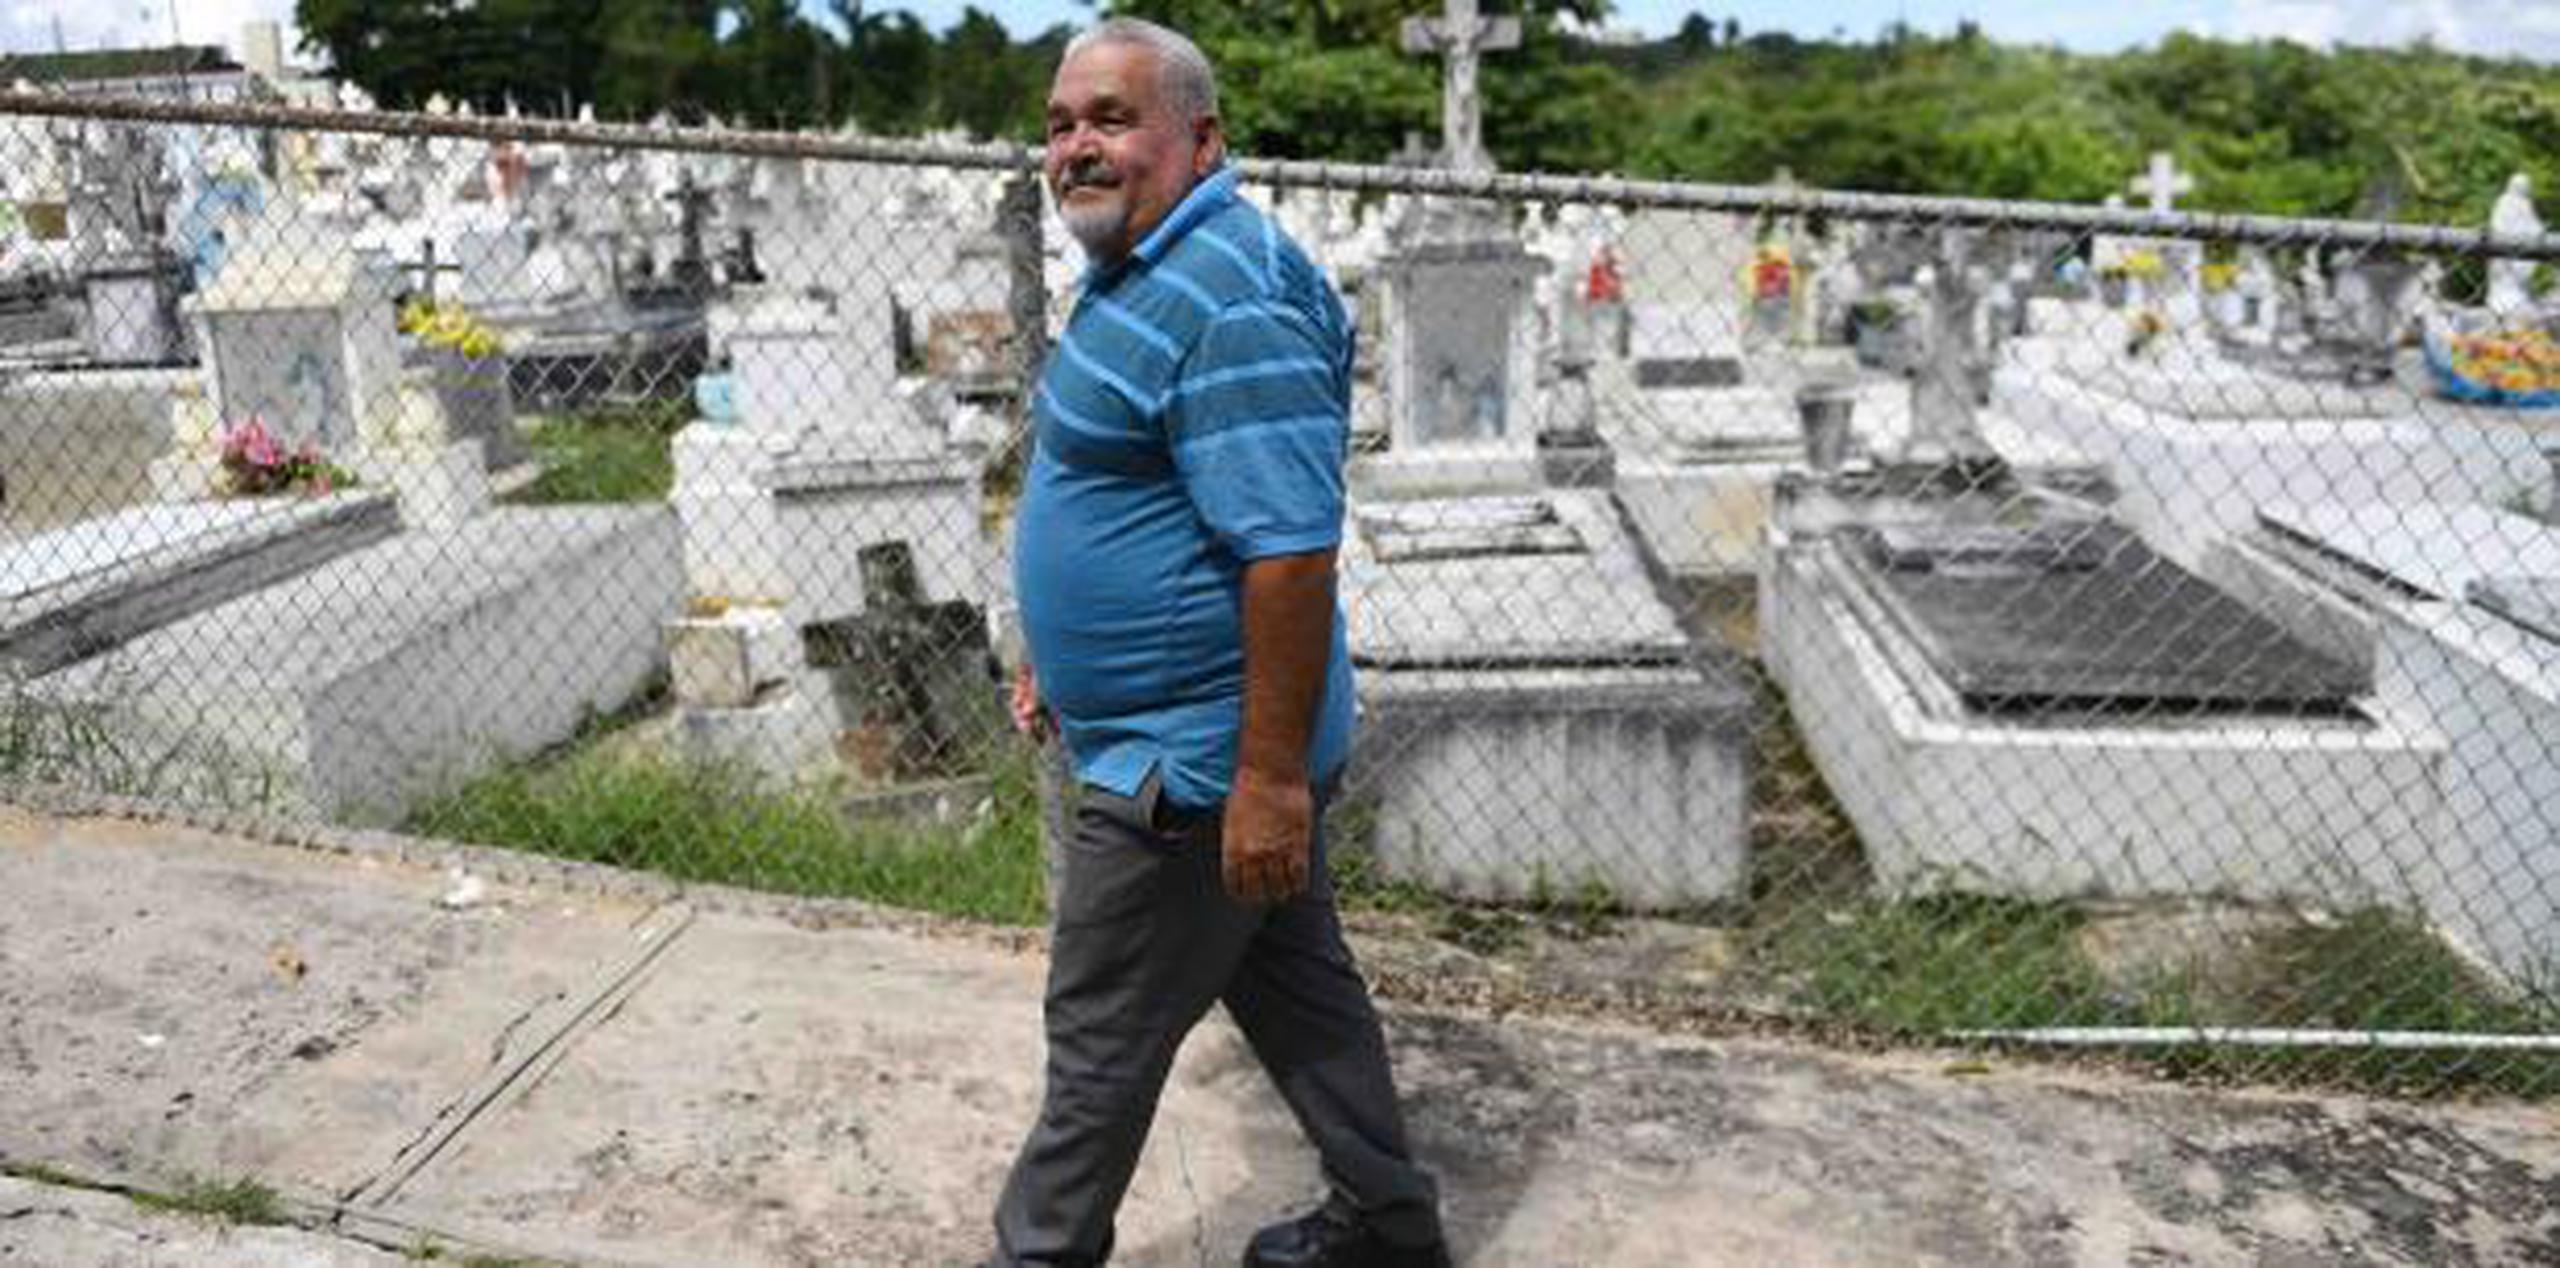 De las tumbas quebradas, el sepulturero Luis  Robles dijo que han podido sacar unos 40 a 50 difuntos y aunque la situación es crítica indicó que no hay restos expuestos. (luis.alcaladelolmo@gfrmedia.com)